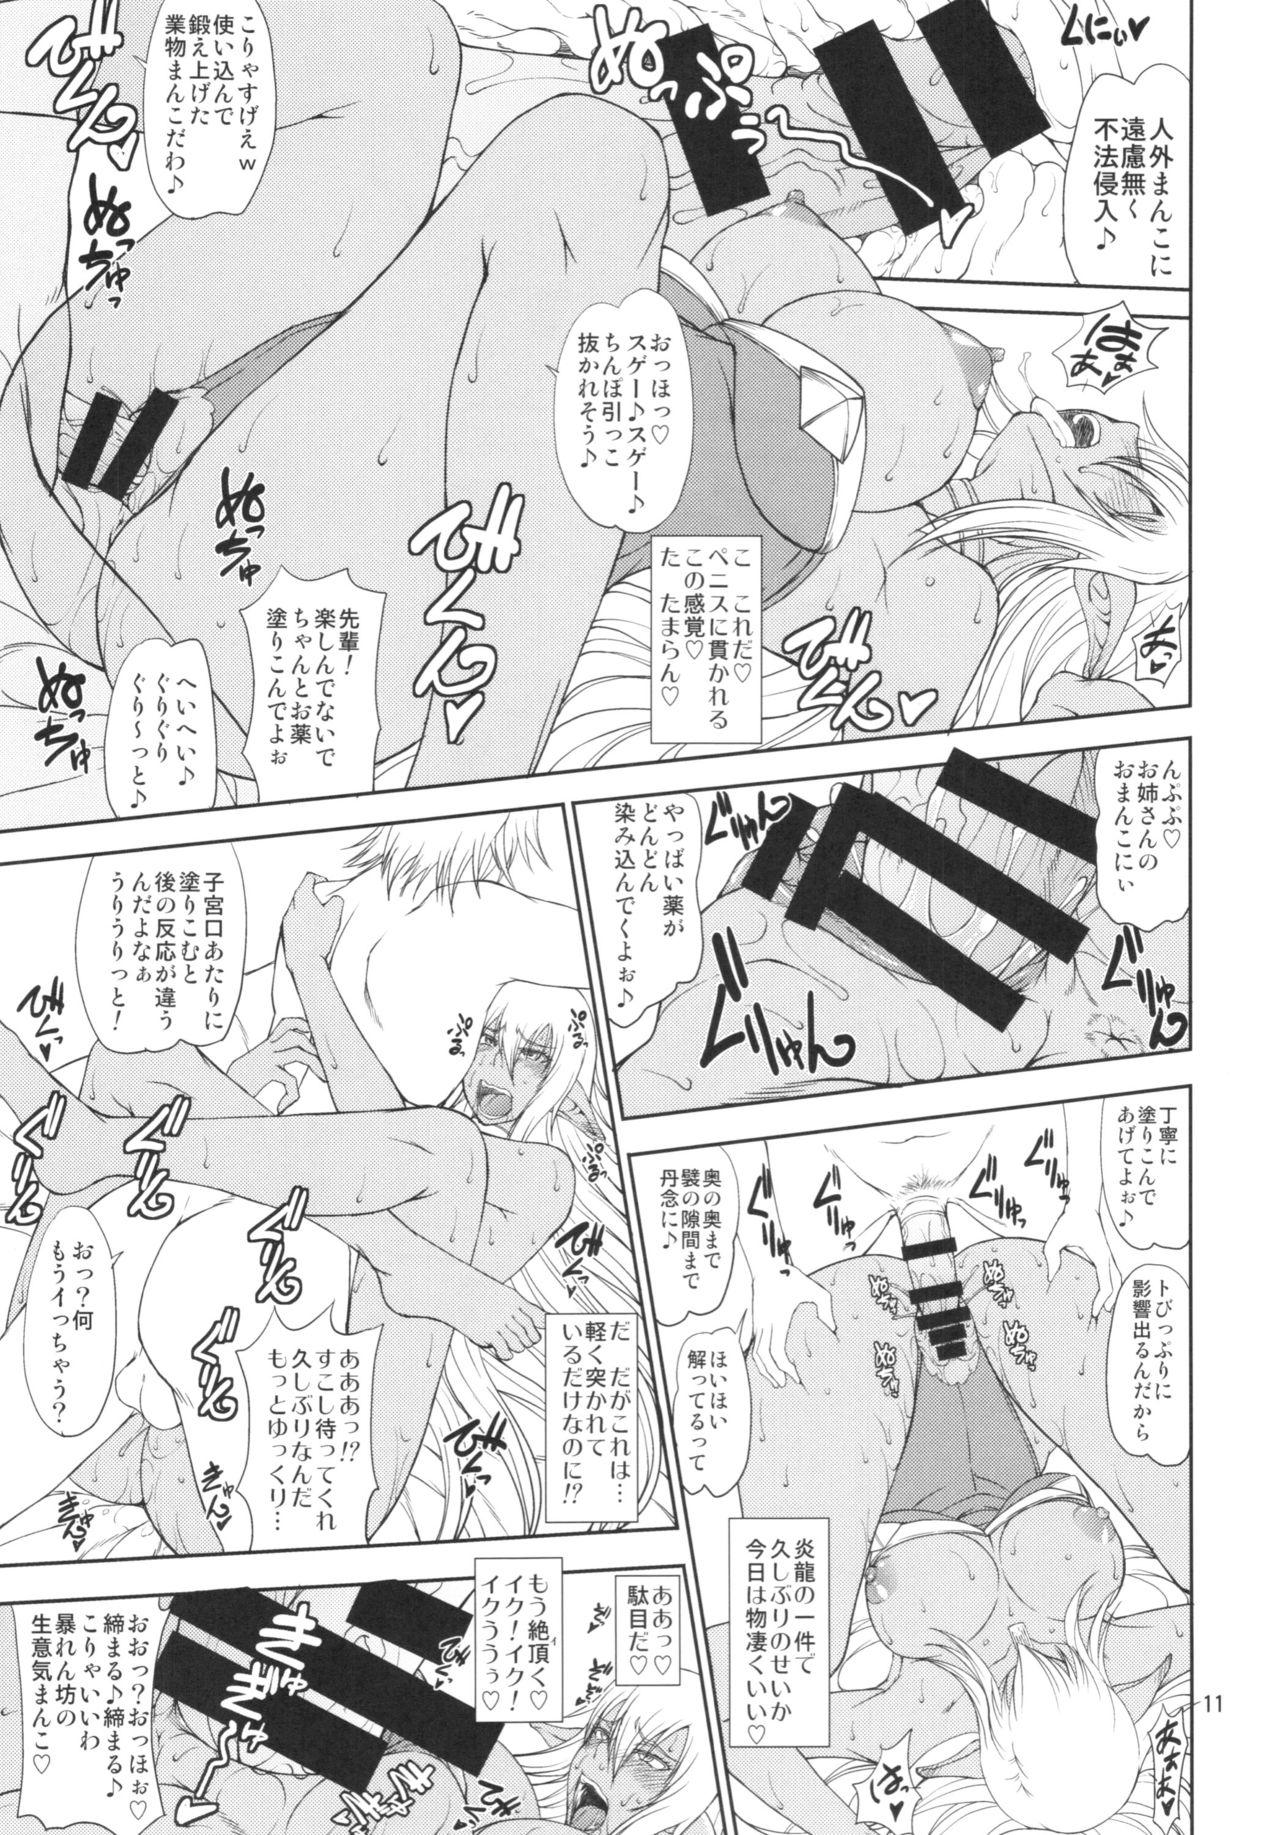 Punk Ka no Kuni nite Kuruizaku Fushou no Konomi ni... + Paper - Gate - jietai kano chi nite kaku tatakaeri Erotic - Page 11